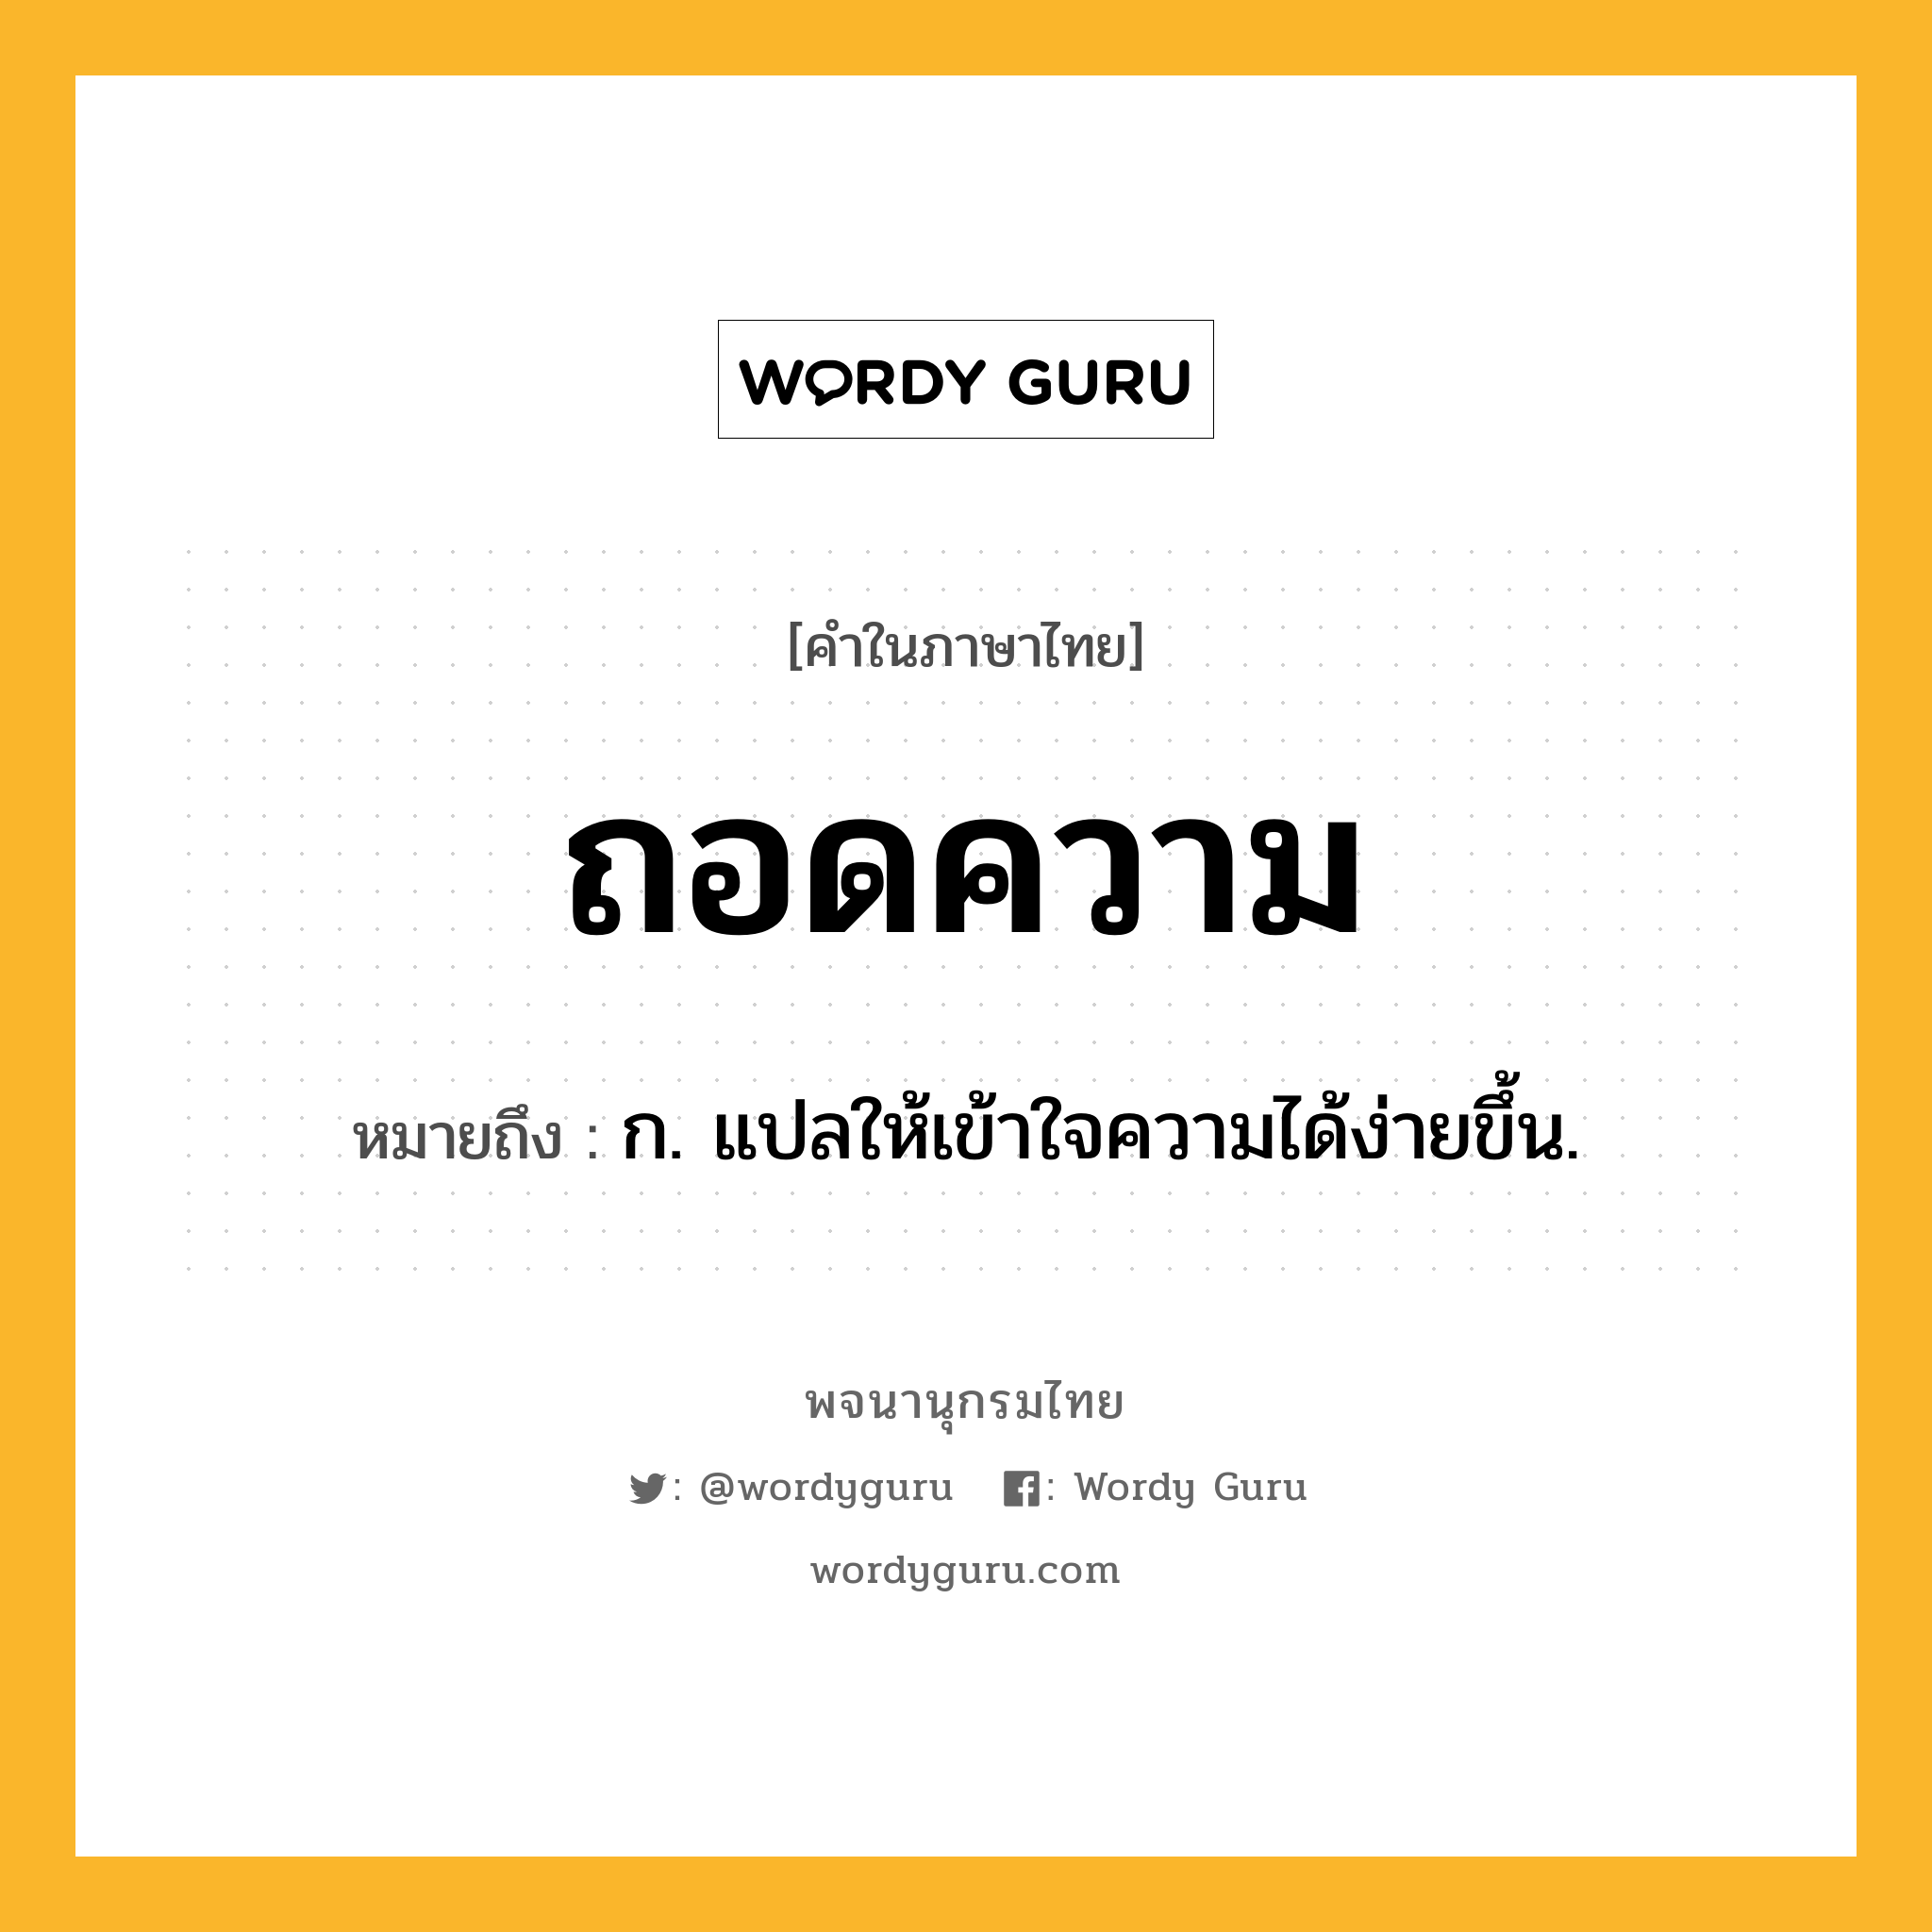 ถอดความ หมายถึงอะไร?, คำในภาษาไทย ถอดความ หมายถึง ก. แปลให้เข้าใจความได้ง่ายขึ้น.